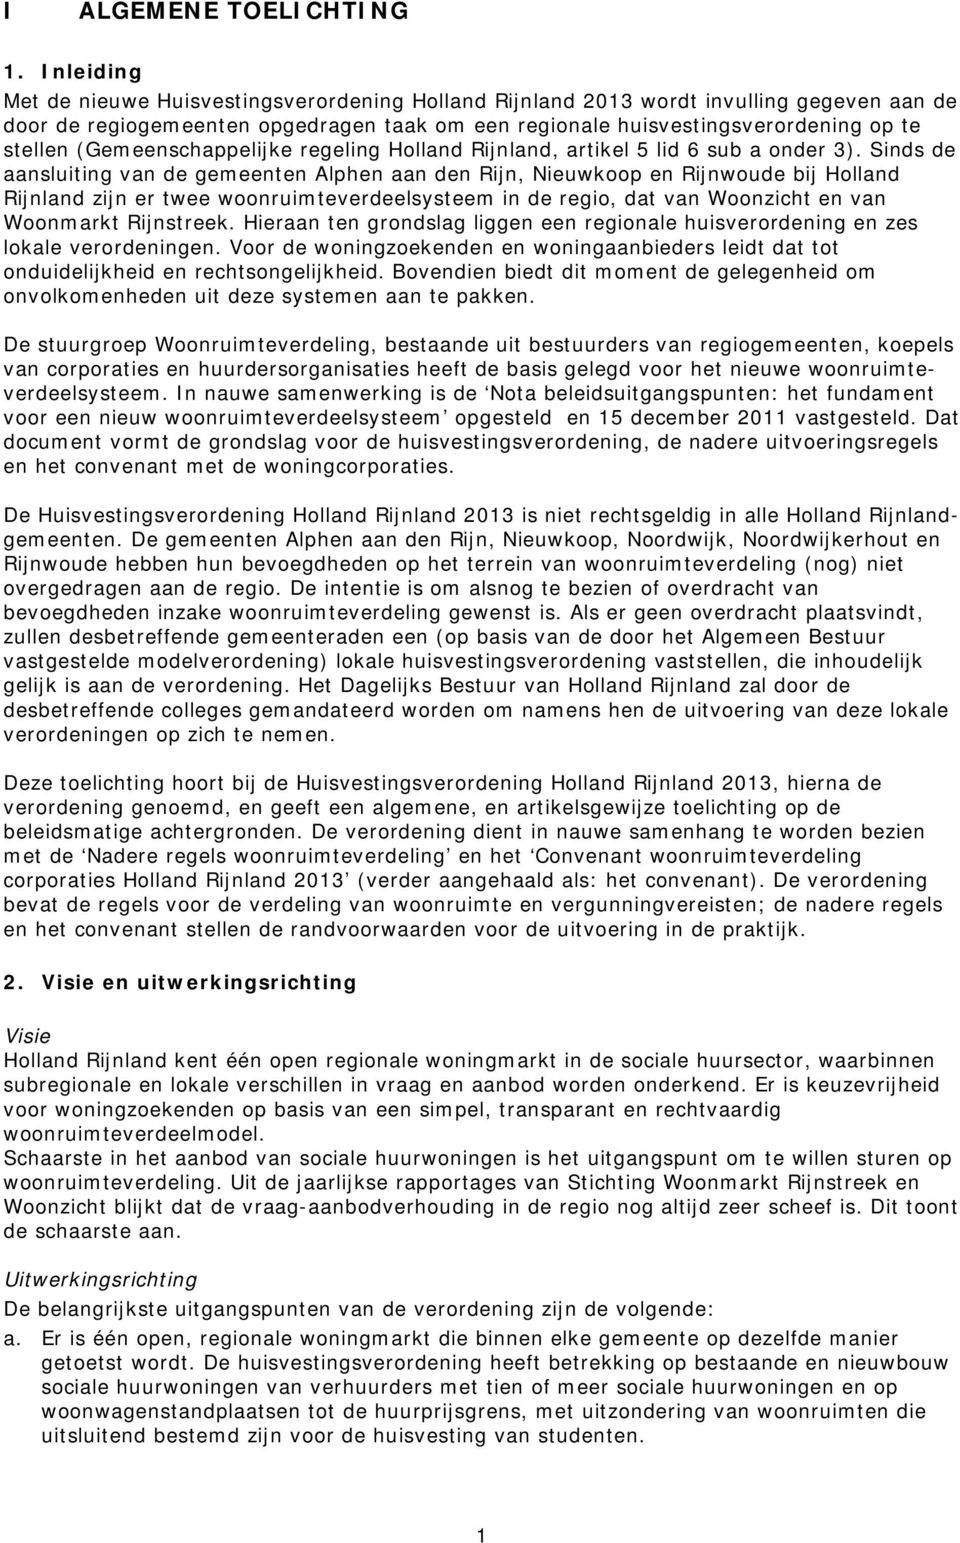 (Gemeenschappelijke regeling Holland Rijnland, artikel 5 lid 6 sub a onder 3).